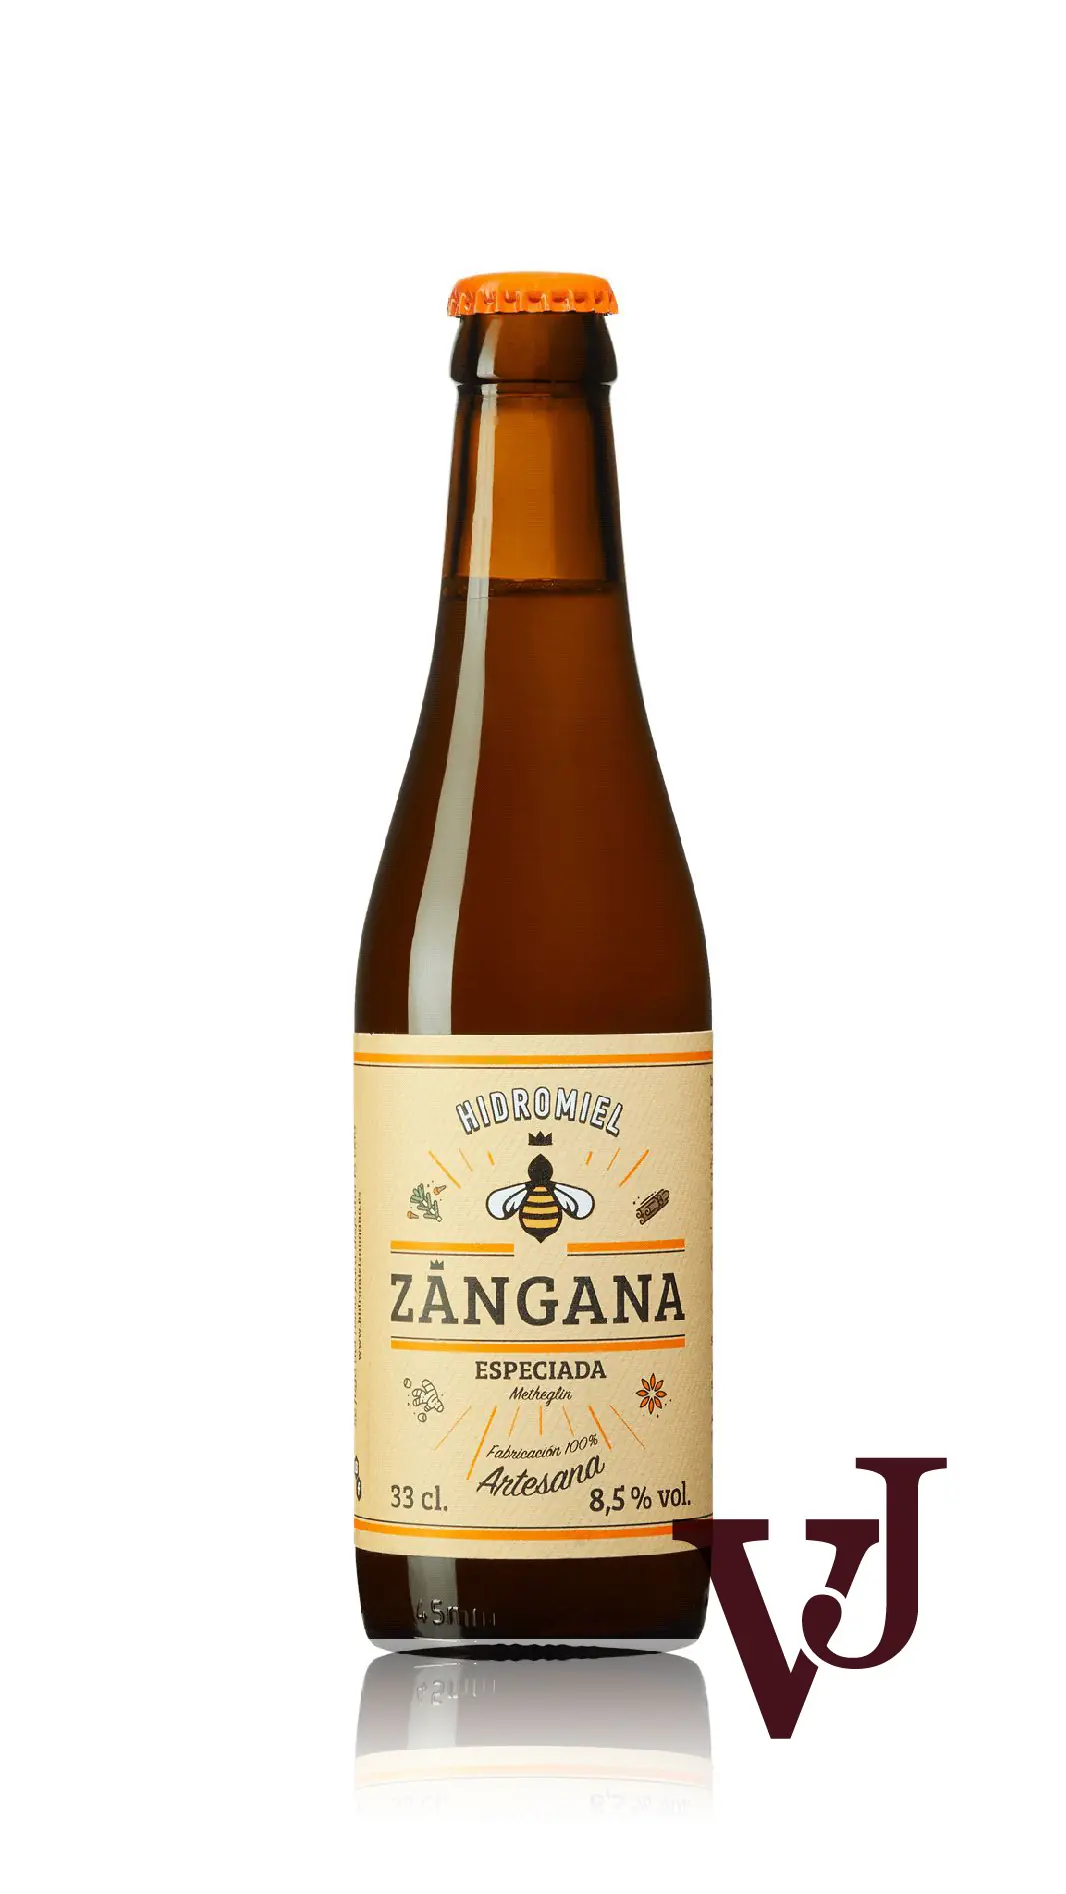 Övrigt Vin - Zangana Especiada Asturian Food & Drinks artikel nummer 1310202 från producenten SMA Asturian Food & Drinks S.L.Visste du att...Mjöd - Vinjournalen.se